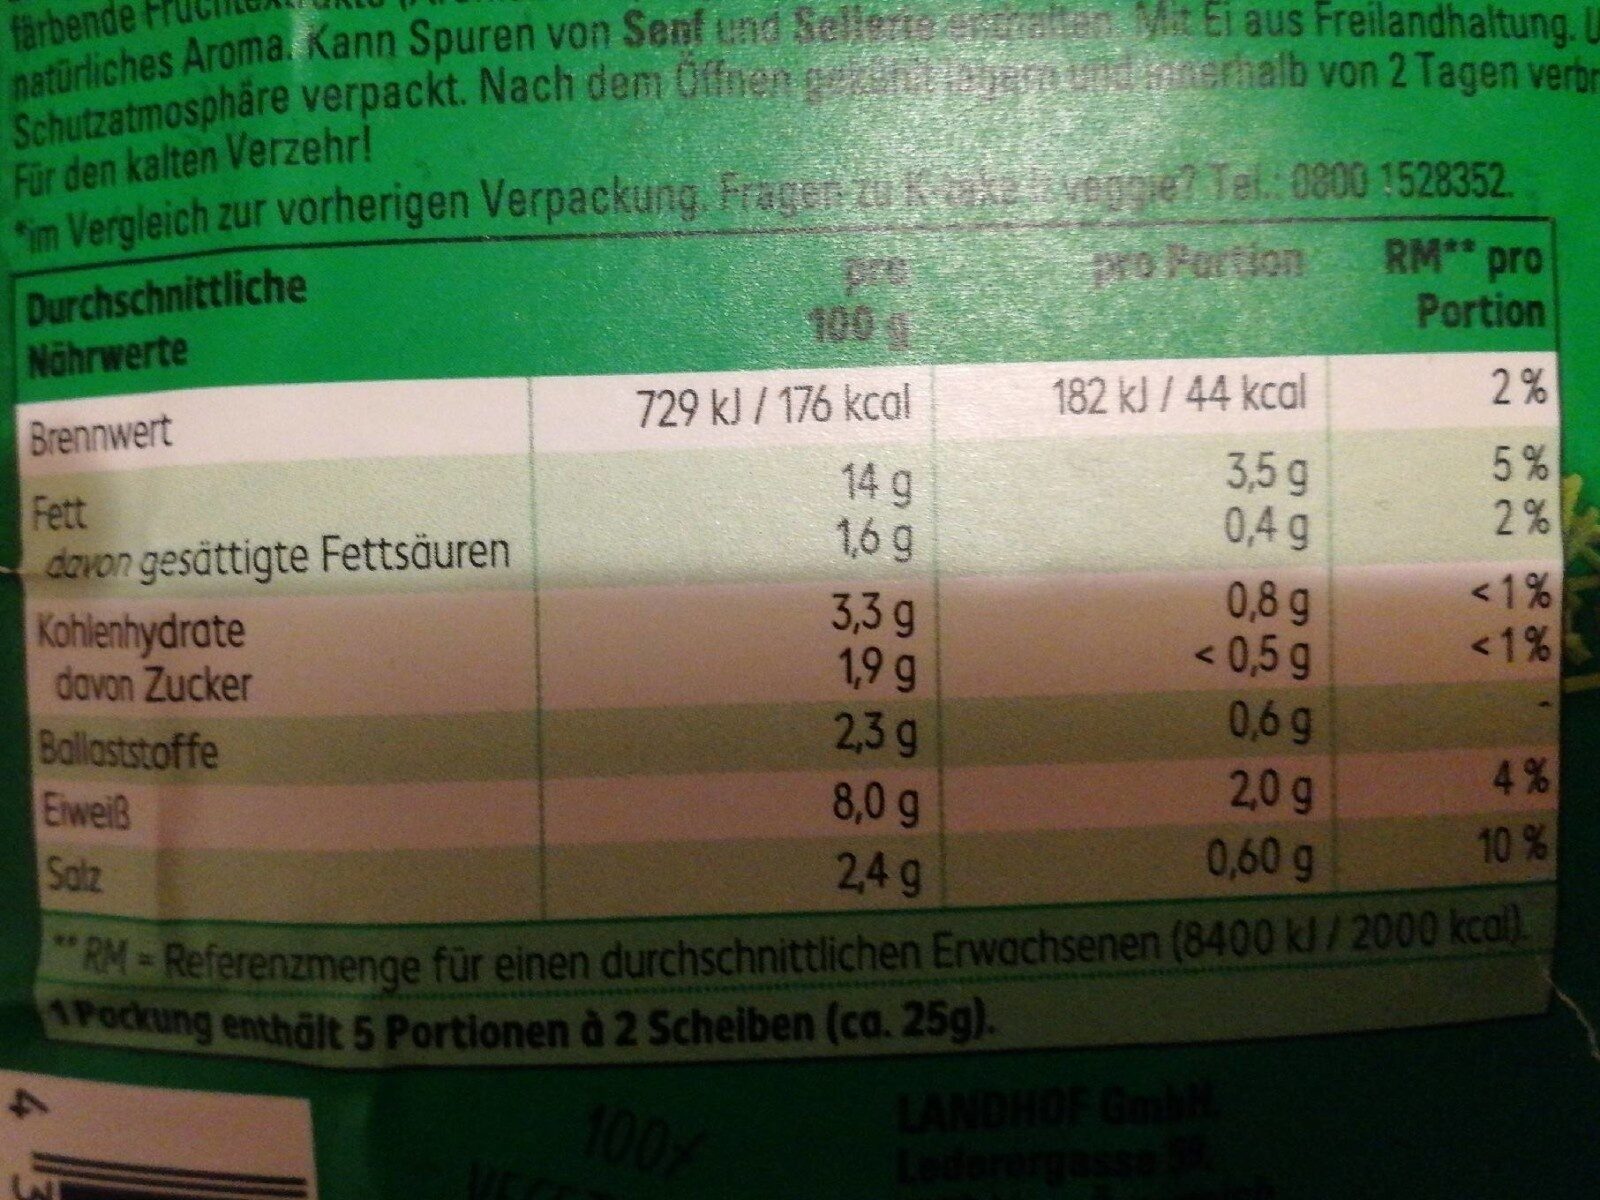 Take It Veggie Vegetarischer Aufschnitt, Mit Schni. .. - Nutrition facts - de